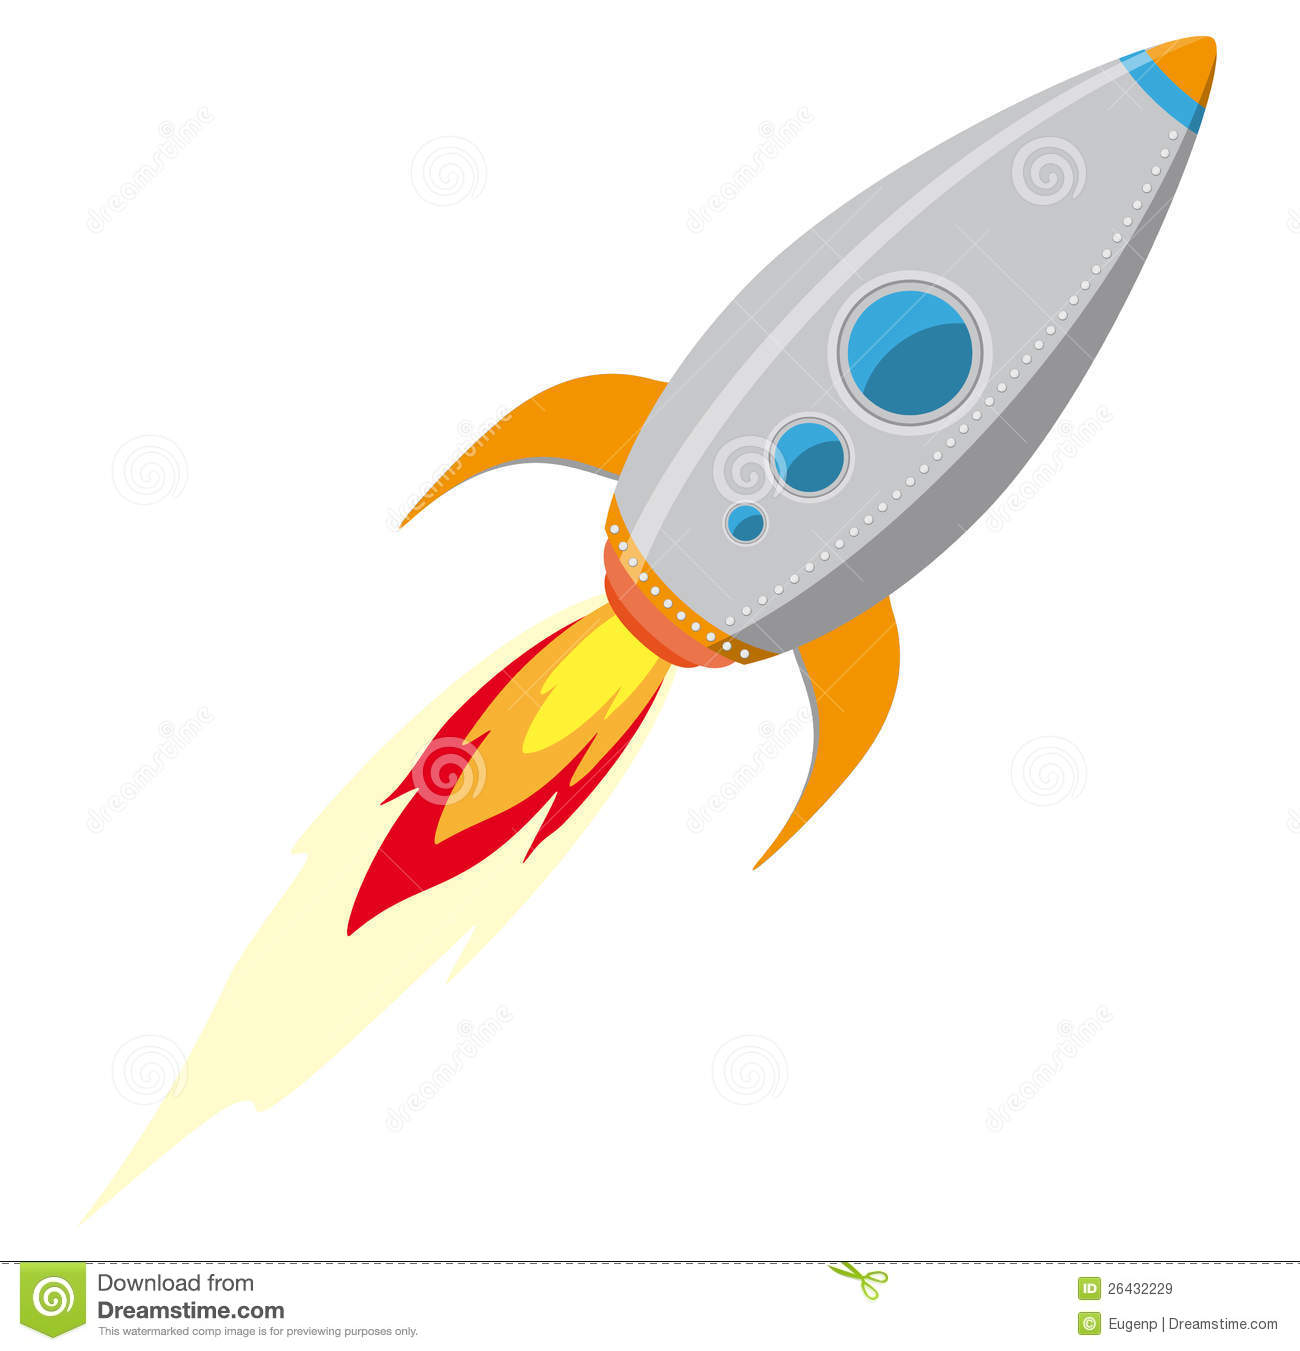 rocket-ship-26432229 - Brevard Schools Foundation | FL